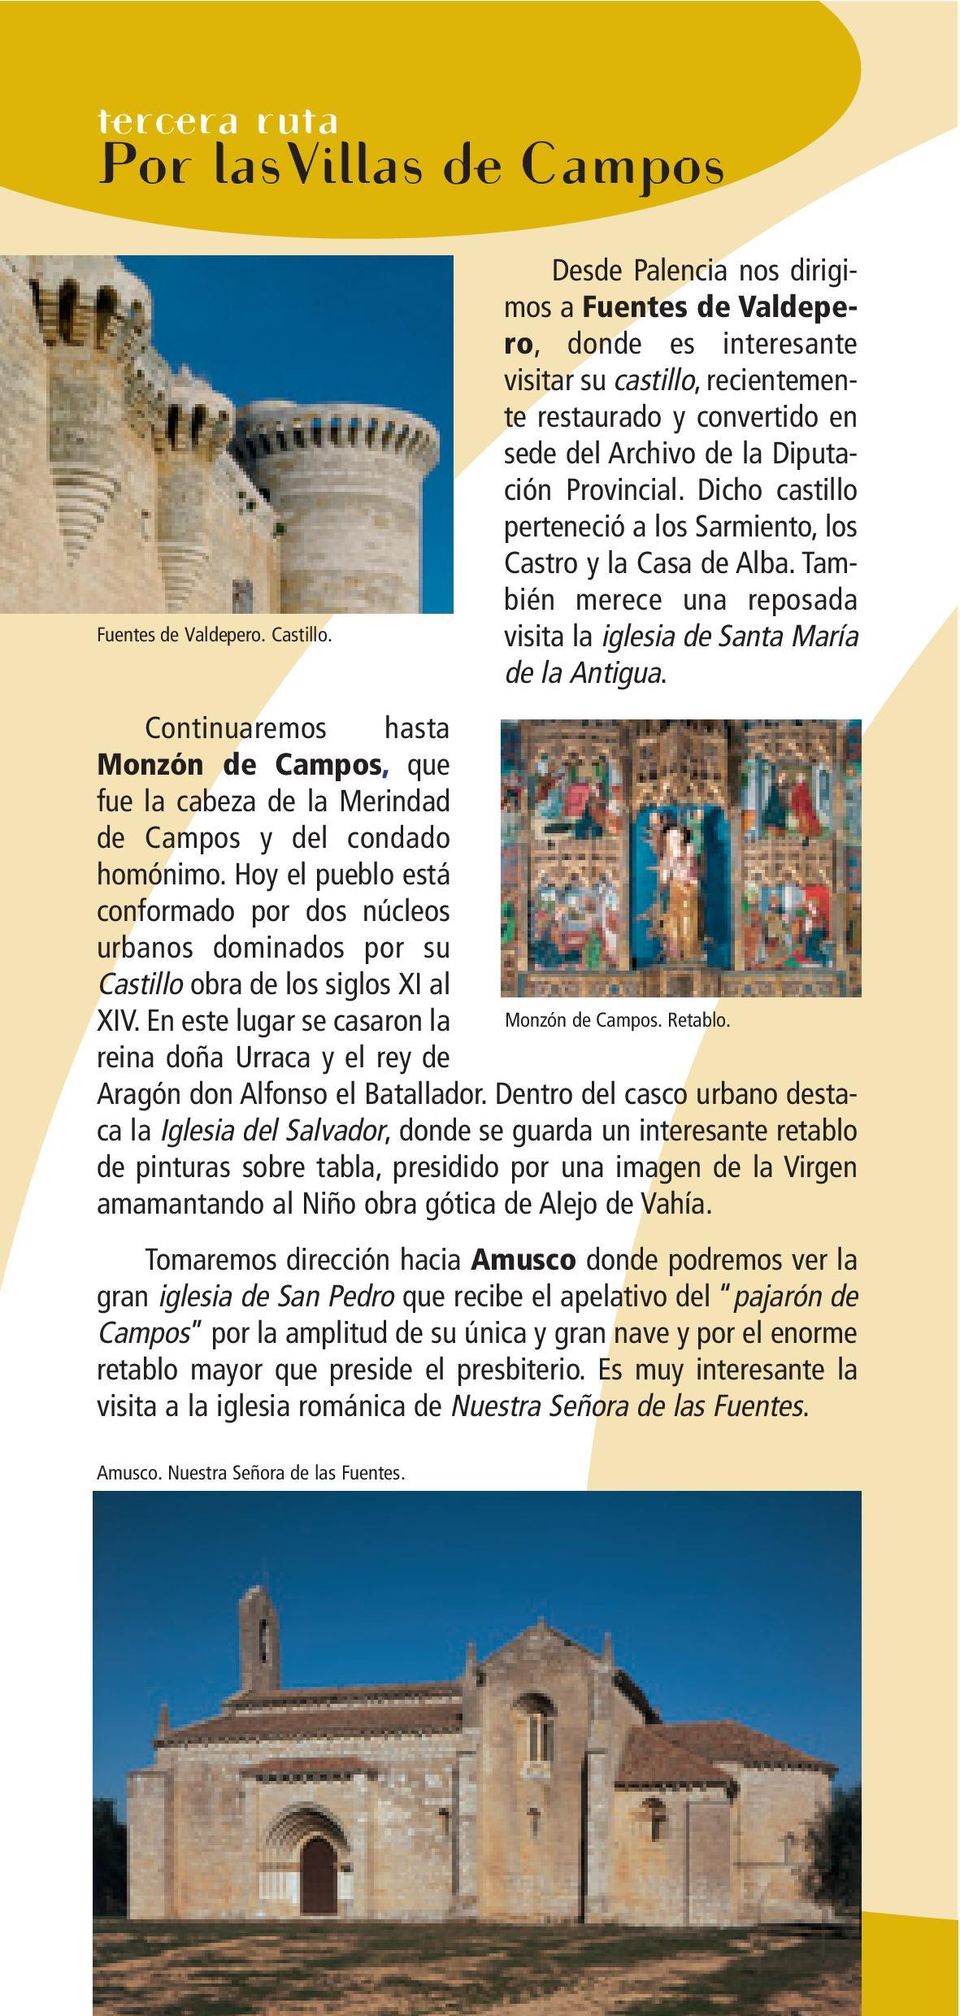 Dicho castillo perteneció a los Sarmiento, los Castro y la Casa de Alba. También merece una reposada visita la iglesia de Santa María de la Antigua.